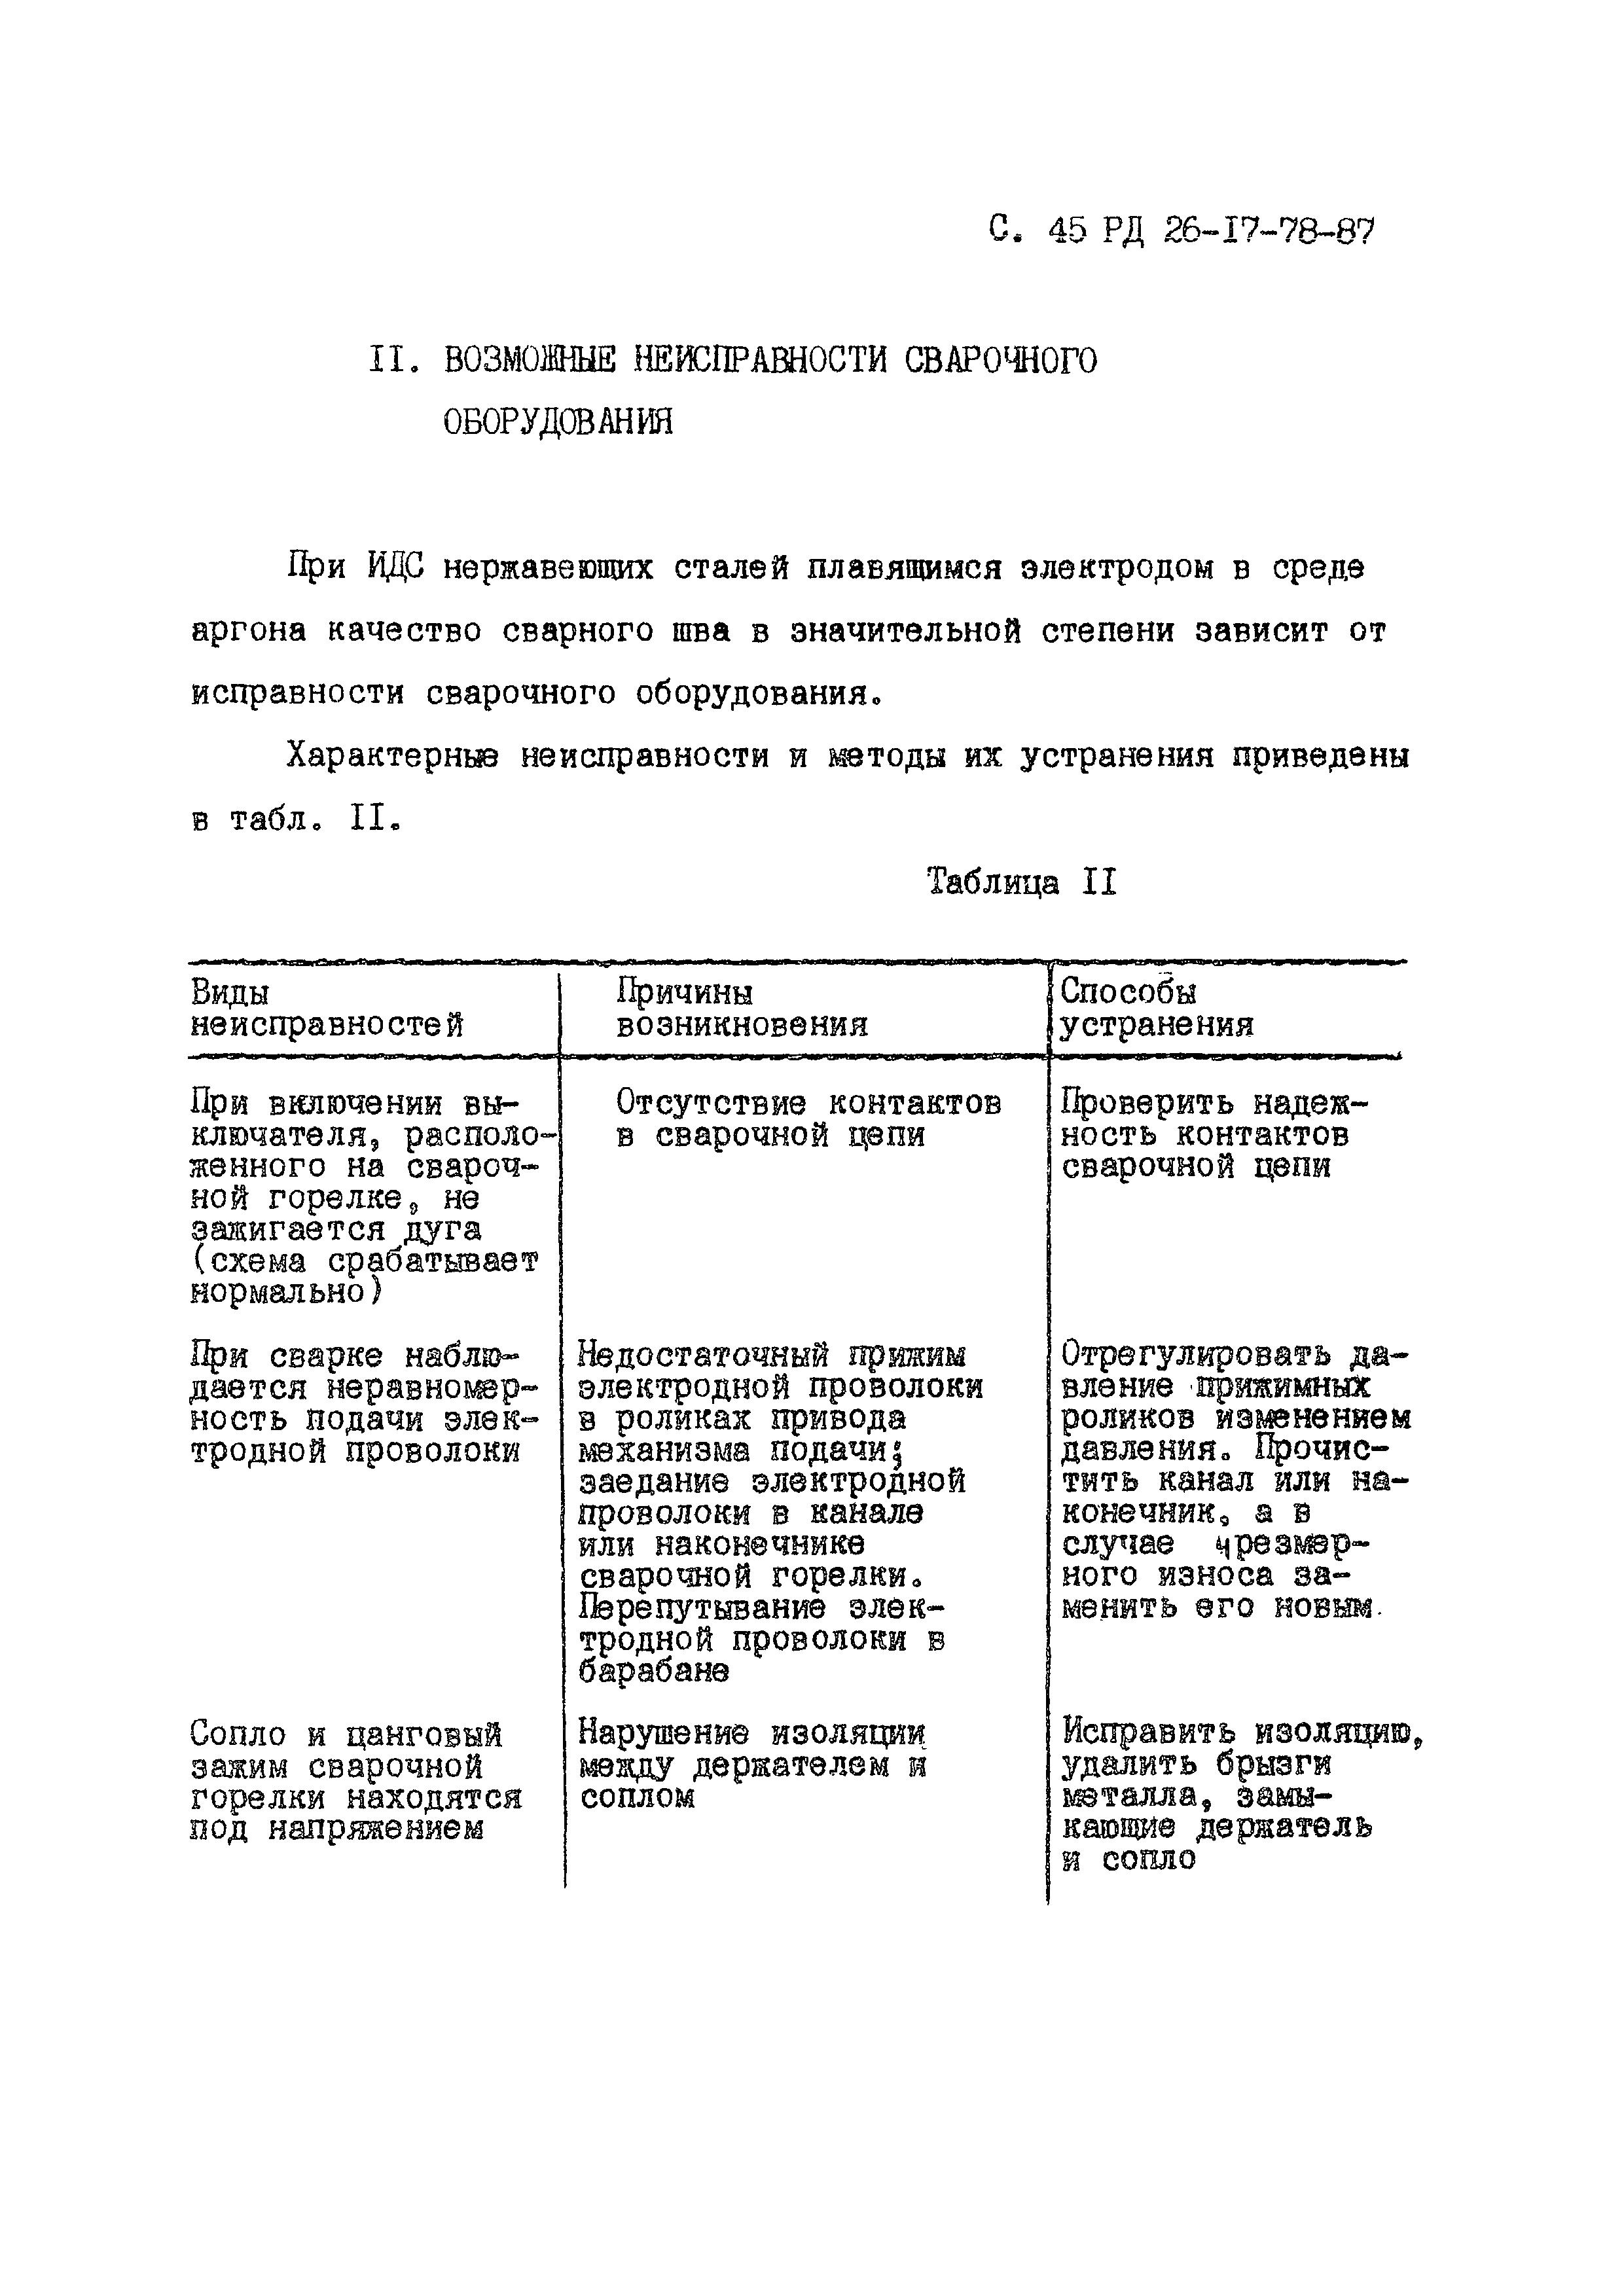 РД 26-17-78-87